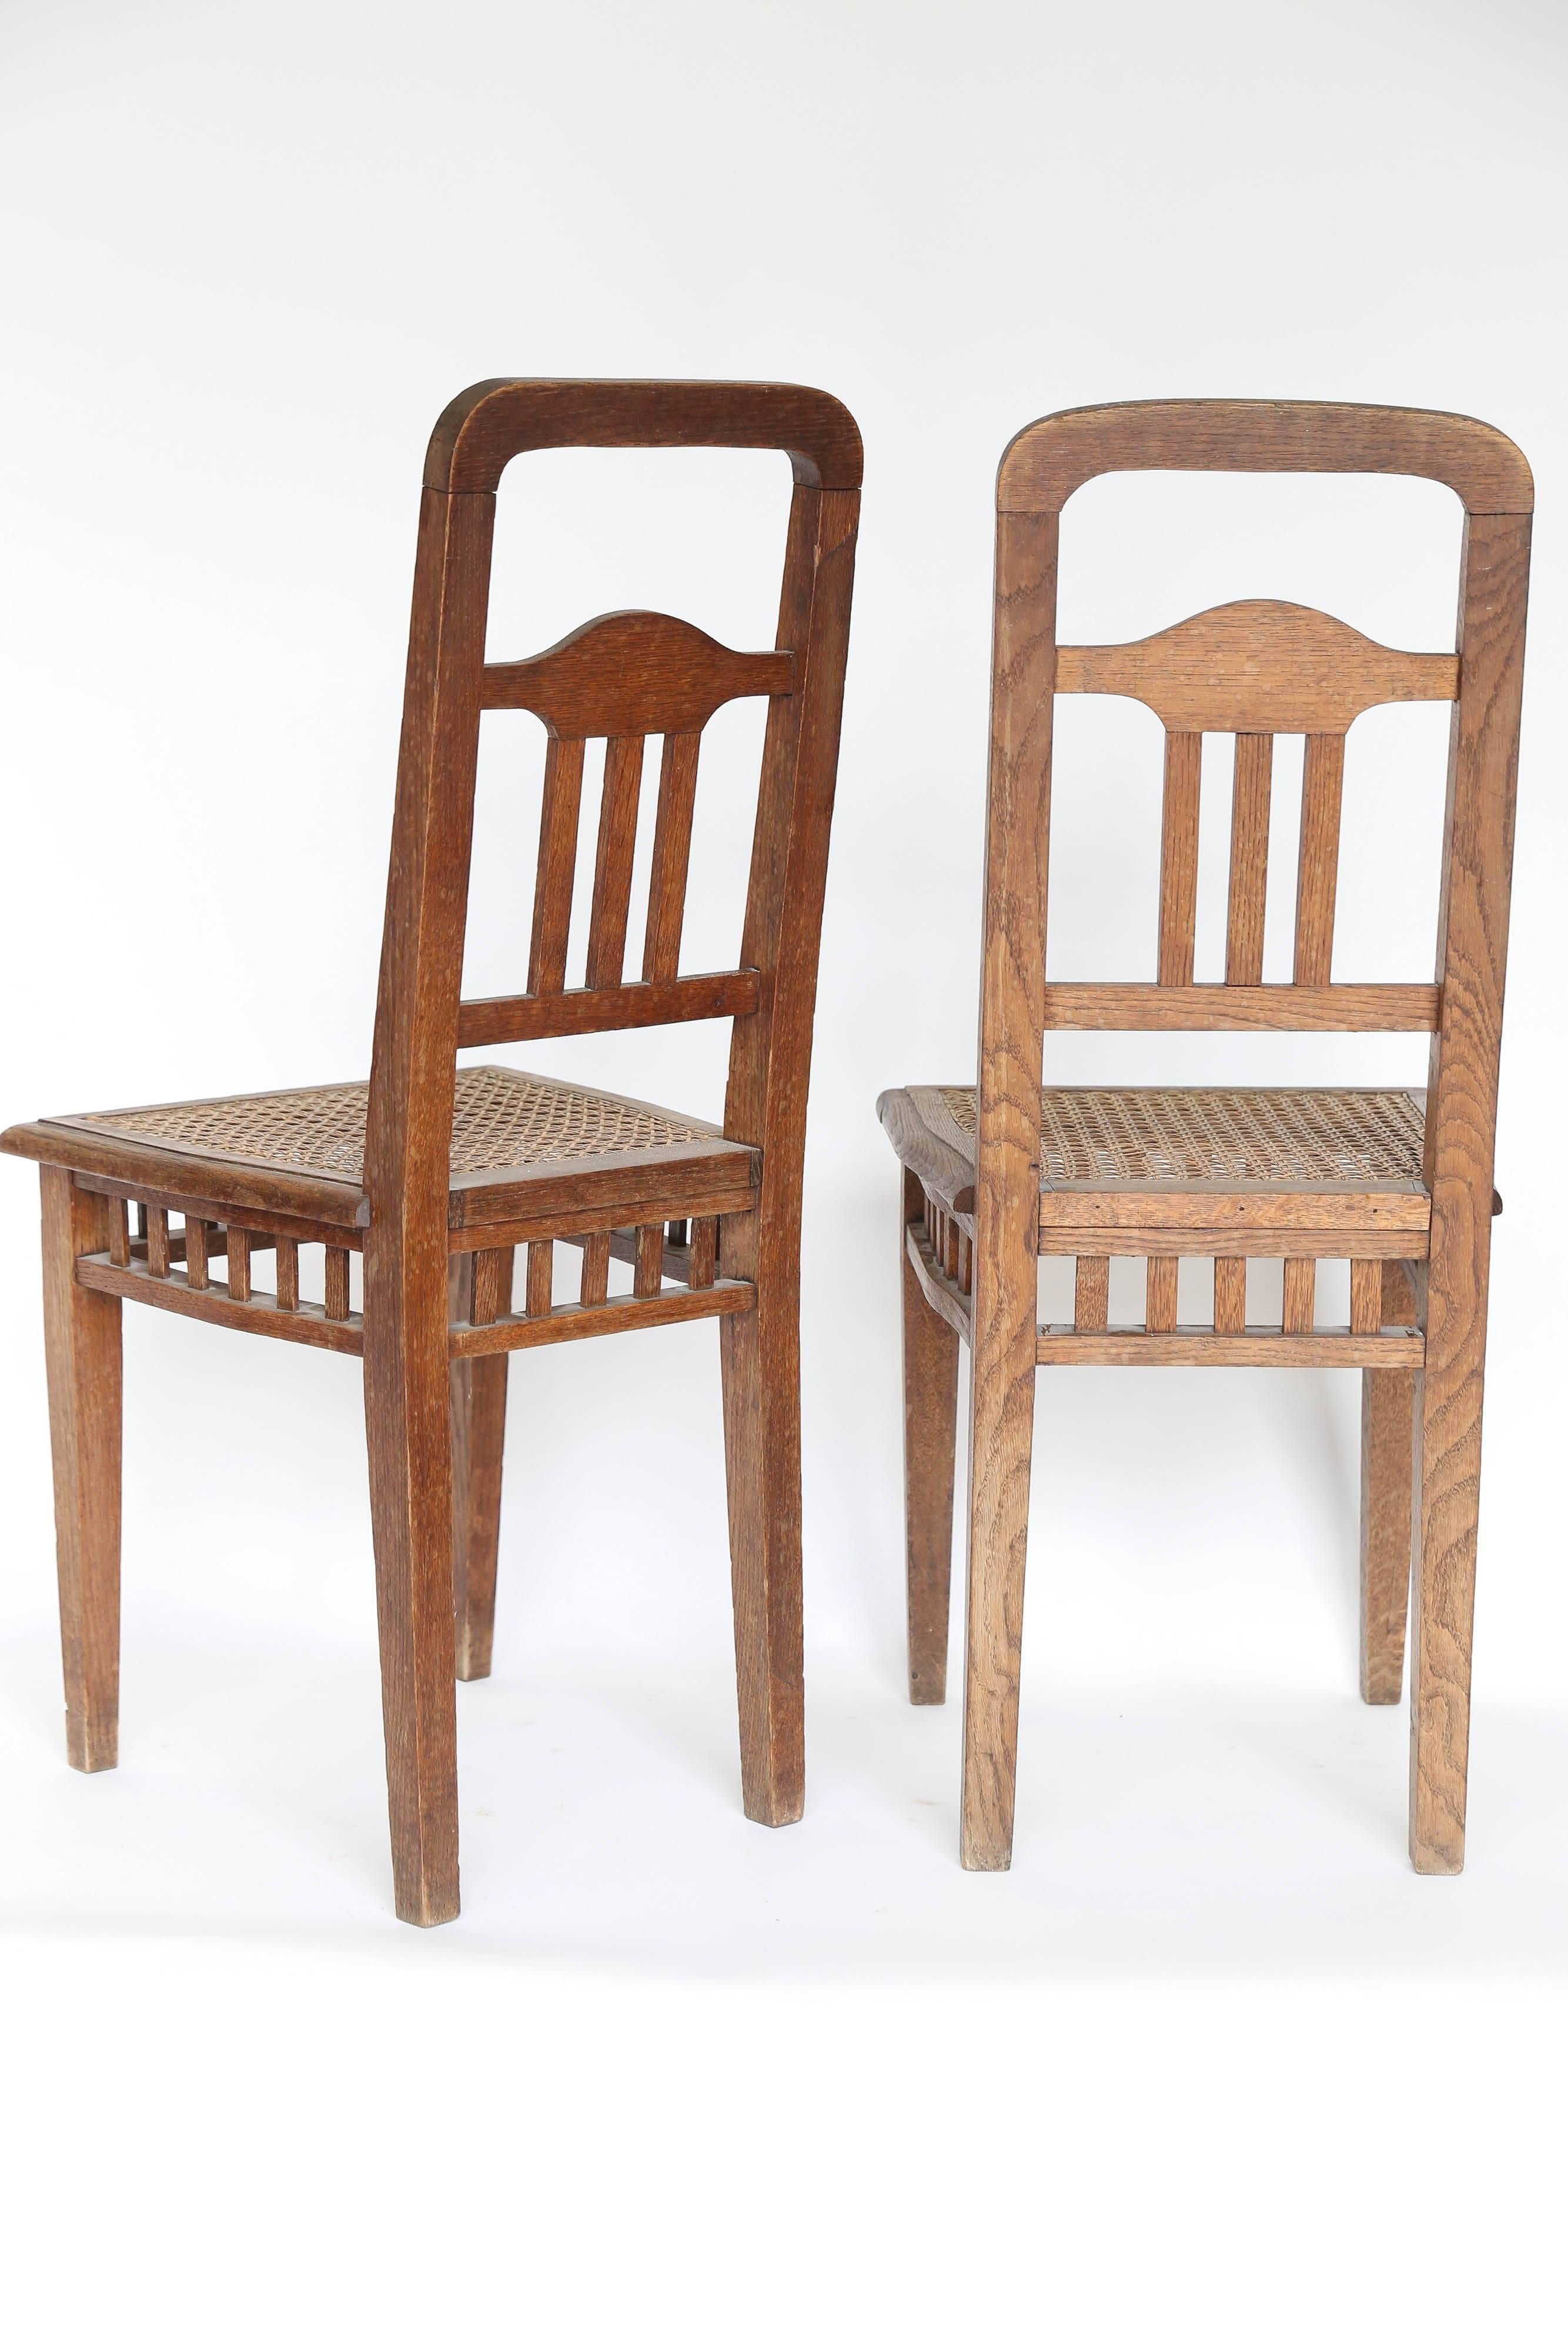 Pair of Children's Chairs 1